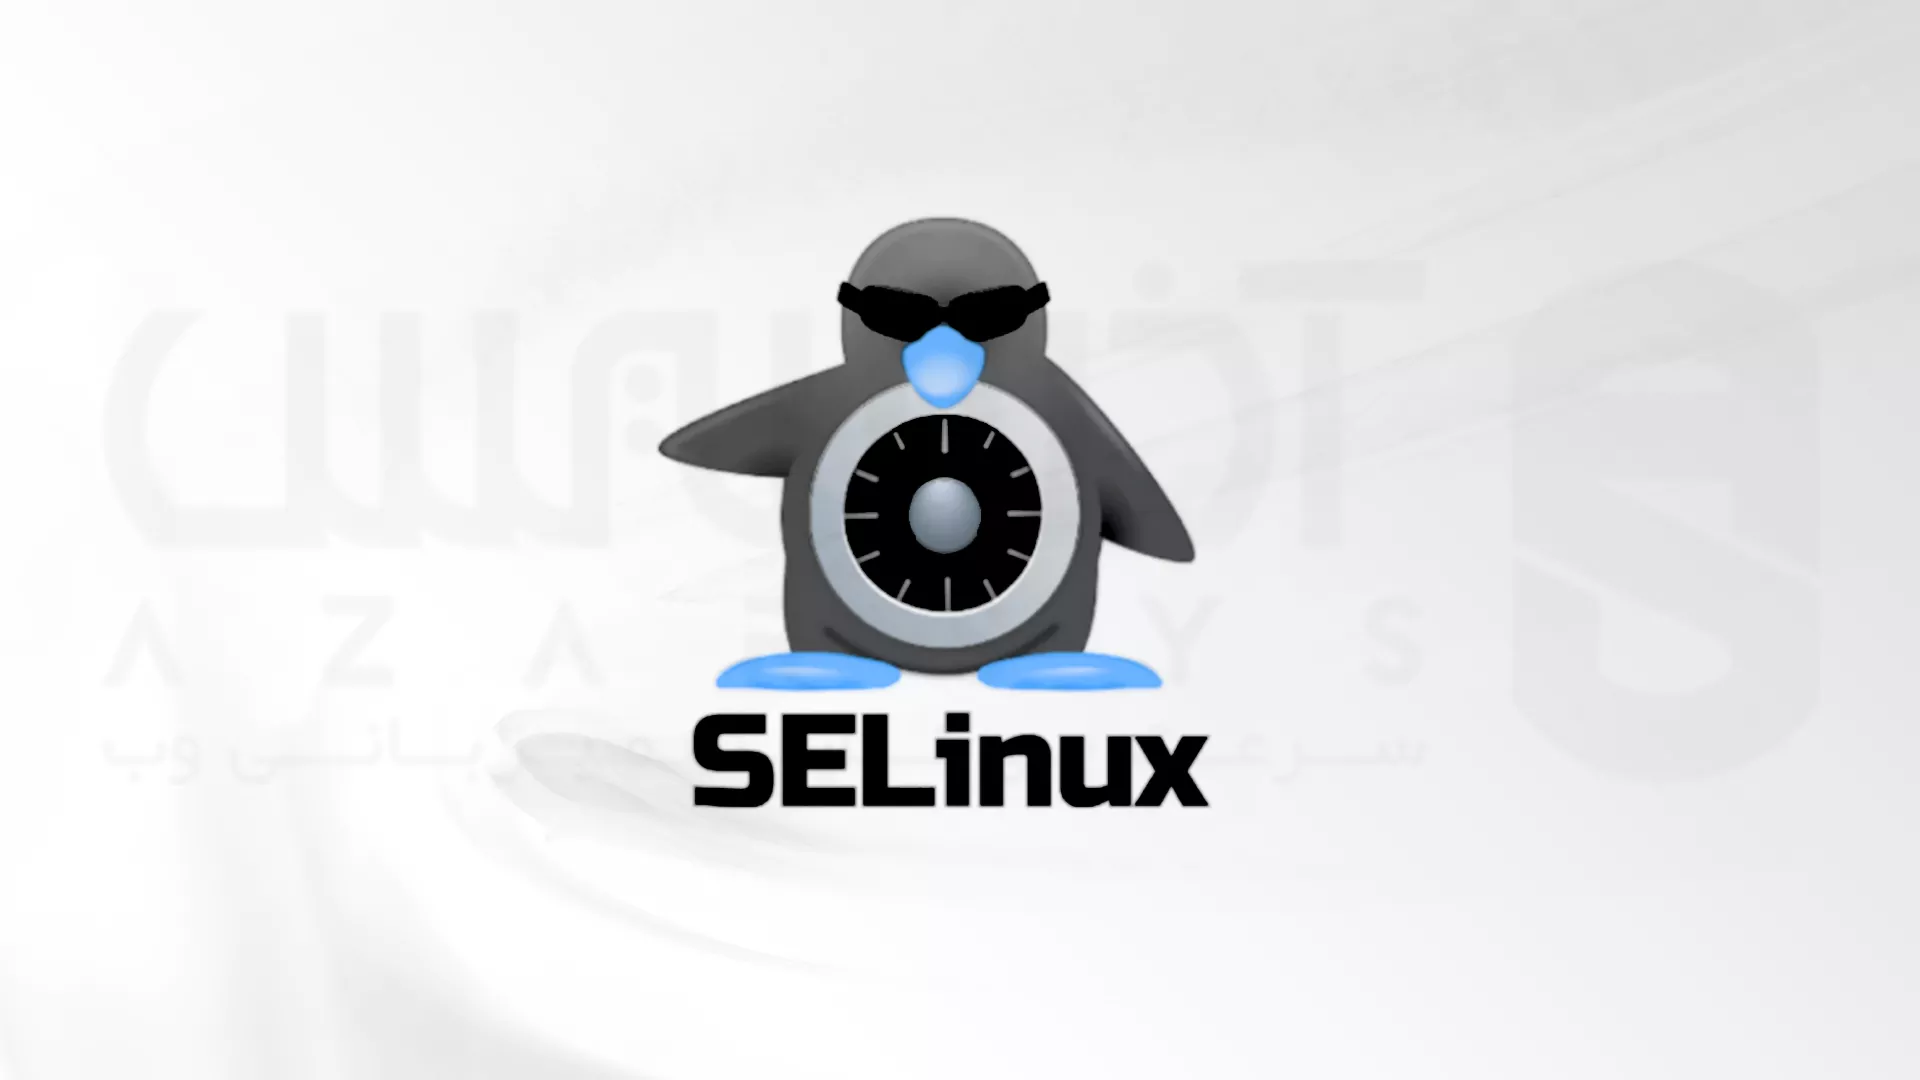 نحوه فعال کردن یا نصب مجدد SELinux در CentOS 